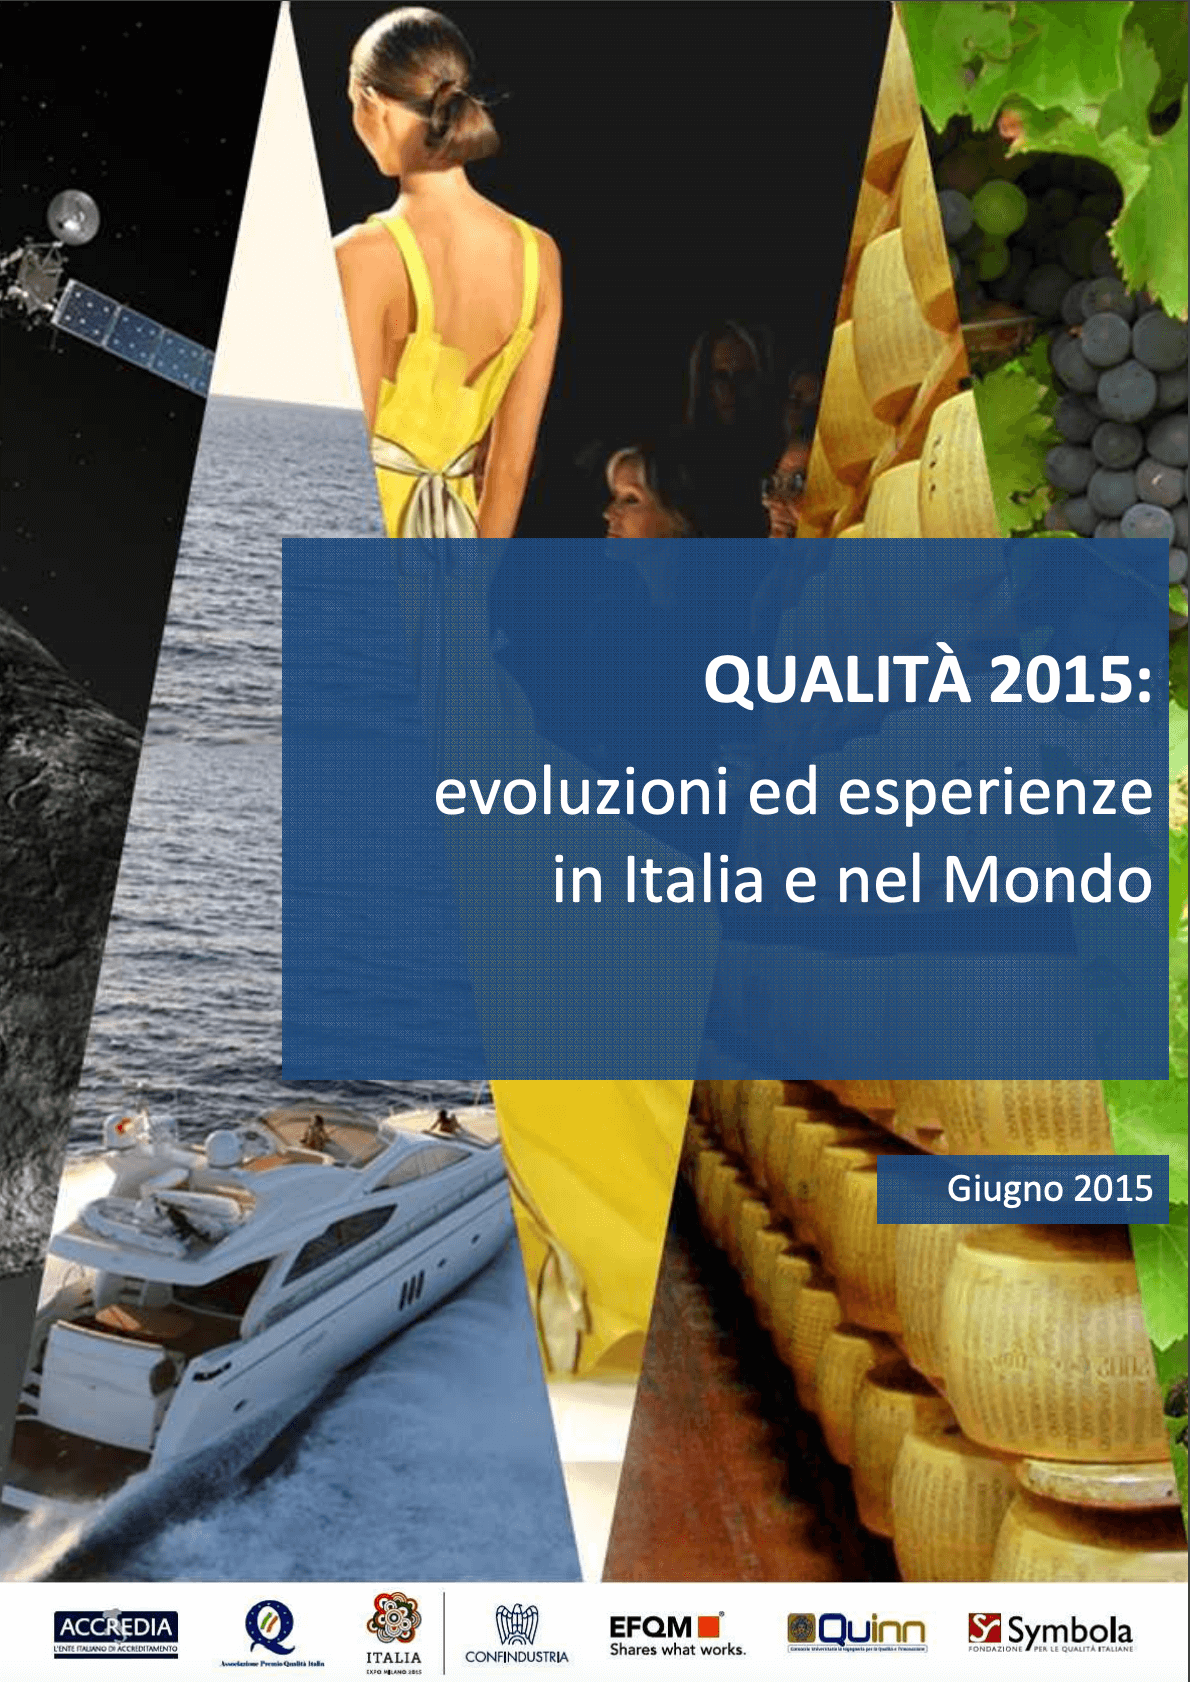 Qualità 2015: evoluzioni ed esperienze in Italia e nel Mondo